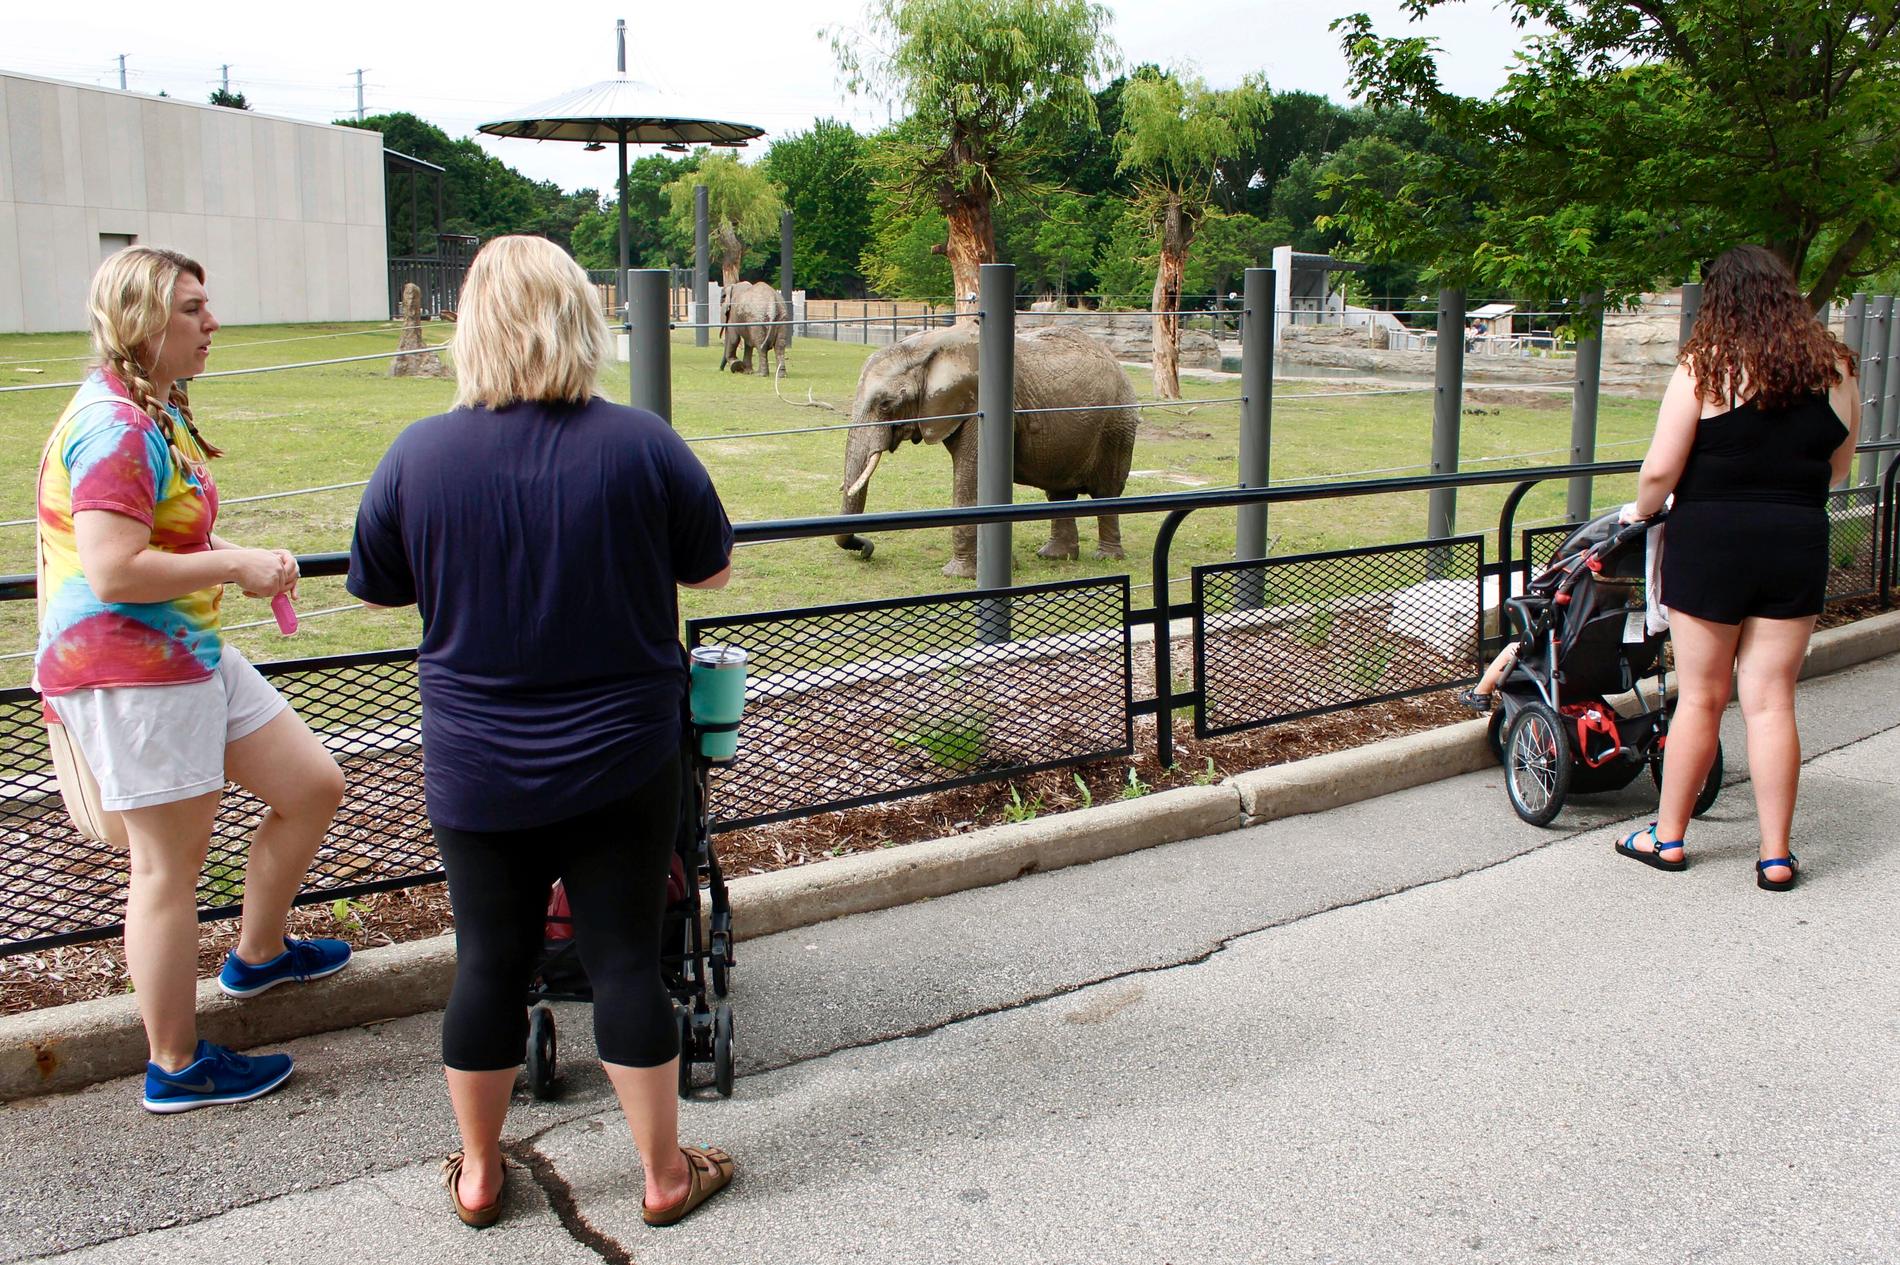 Zoobesökare tittar på två afrikanska elefanter i Milwaukee, USA. Arkivbild.